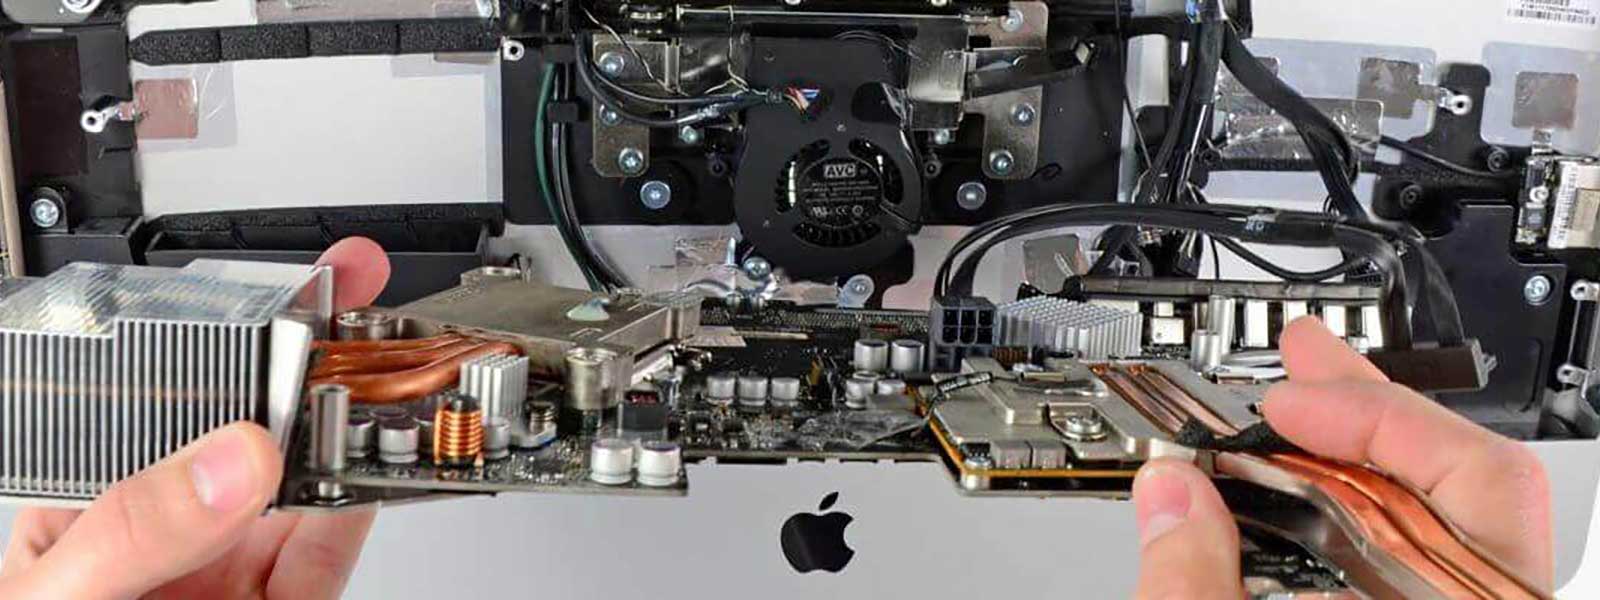 Apple iMac repair and upgrade